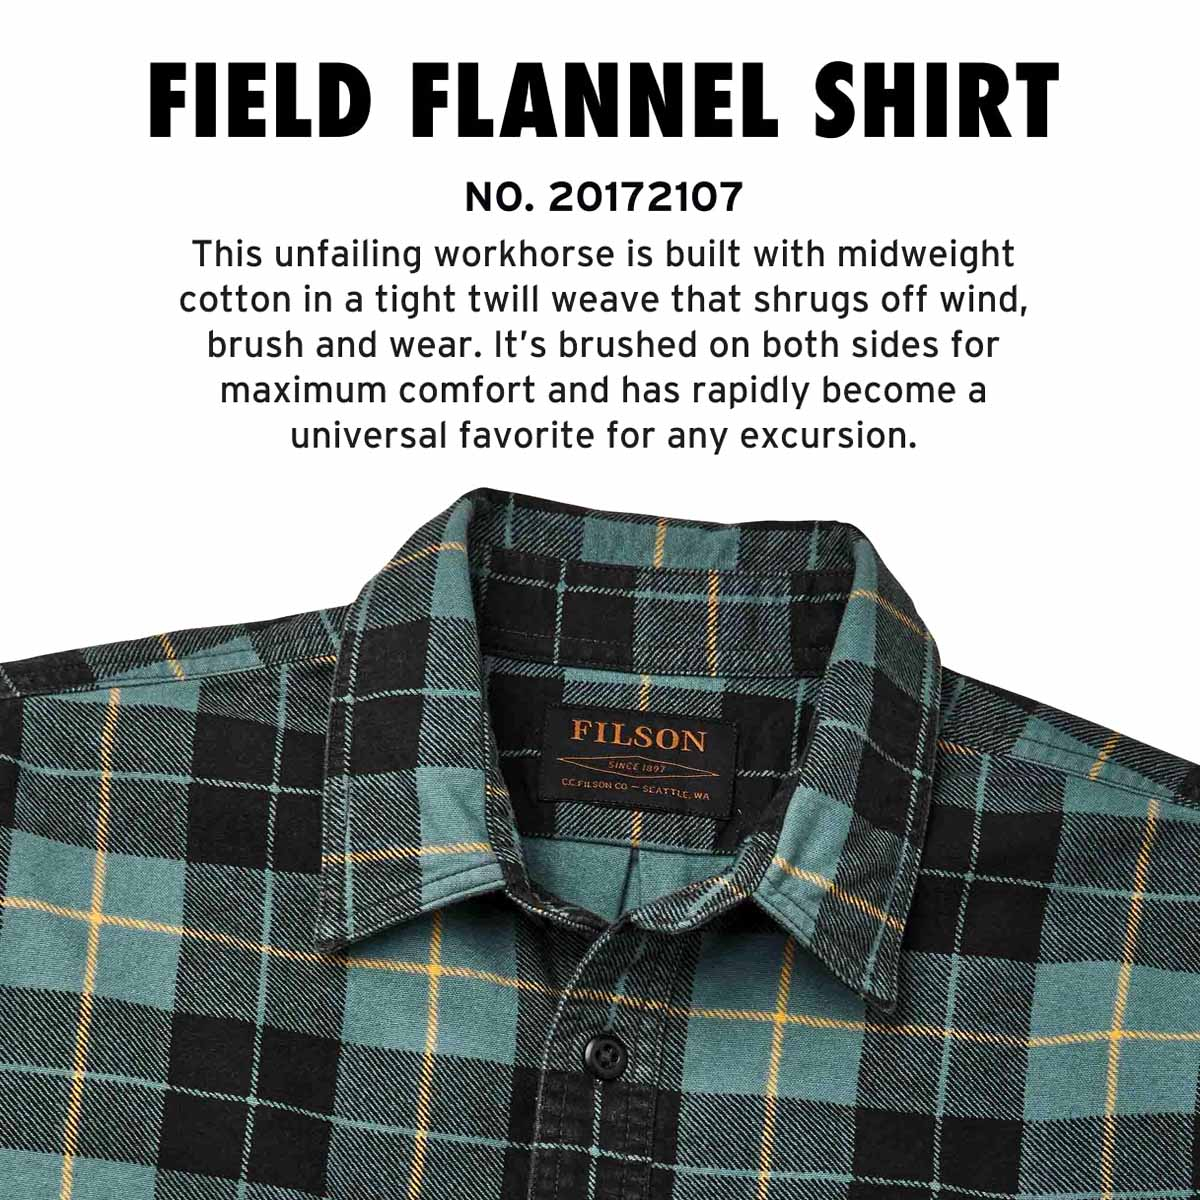 Filson Field Flannel Shirt Northcoast Green Print, Ein ikonisches Hemd in der Entstehung